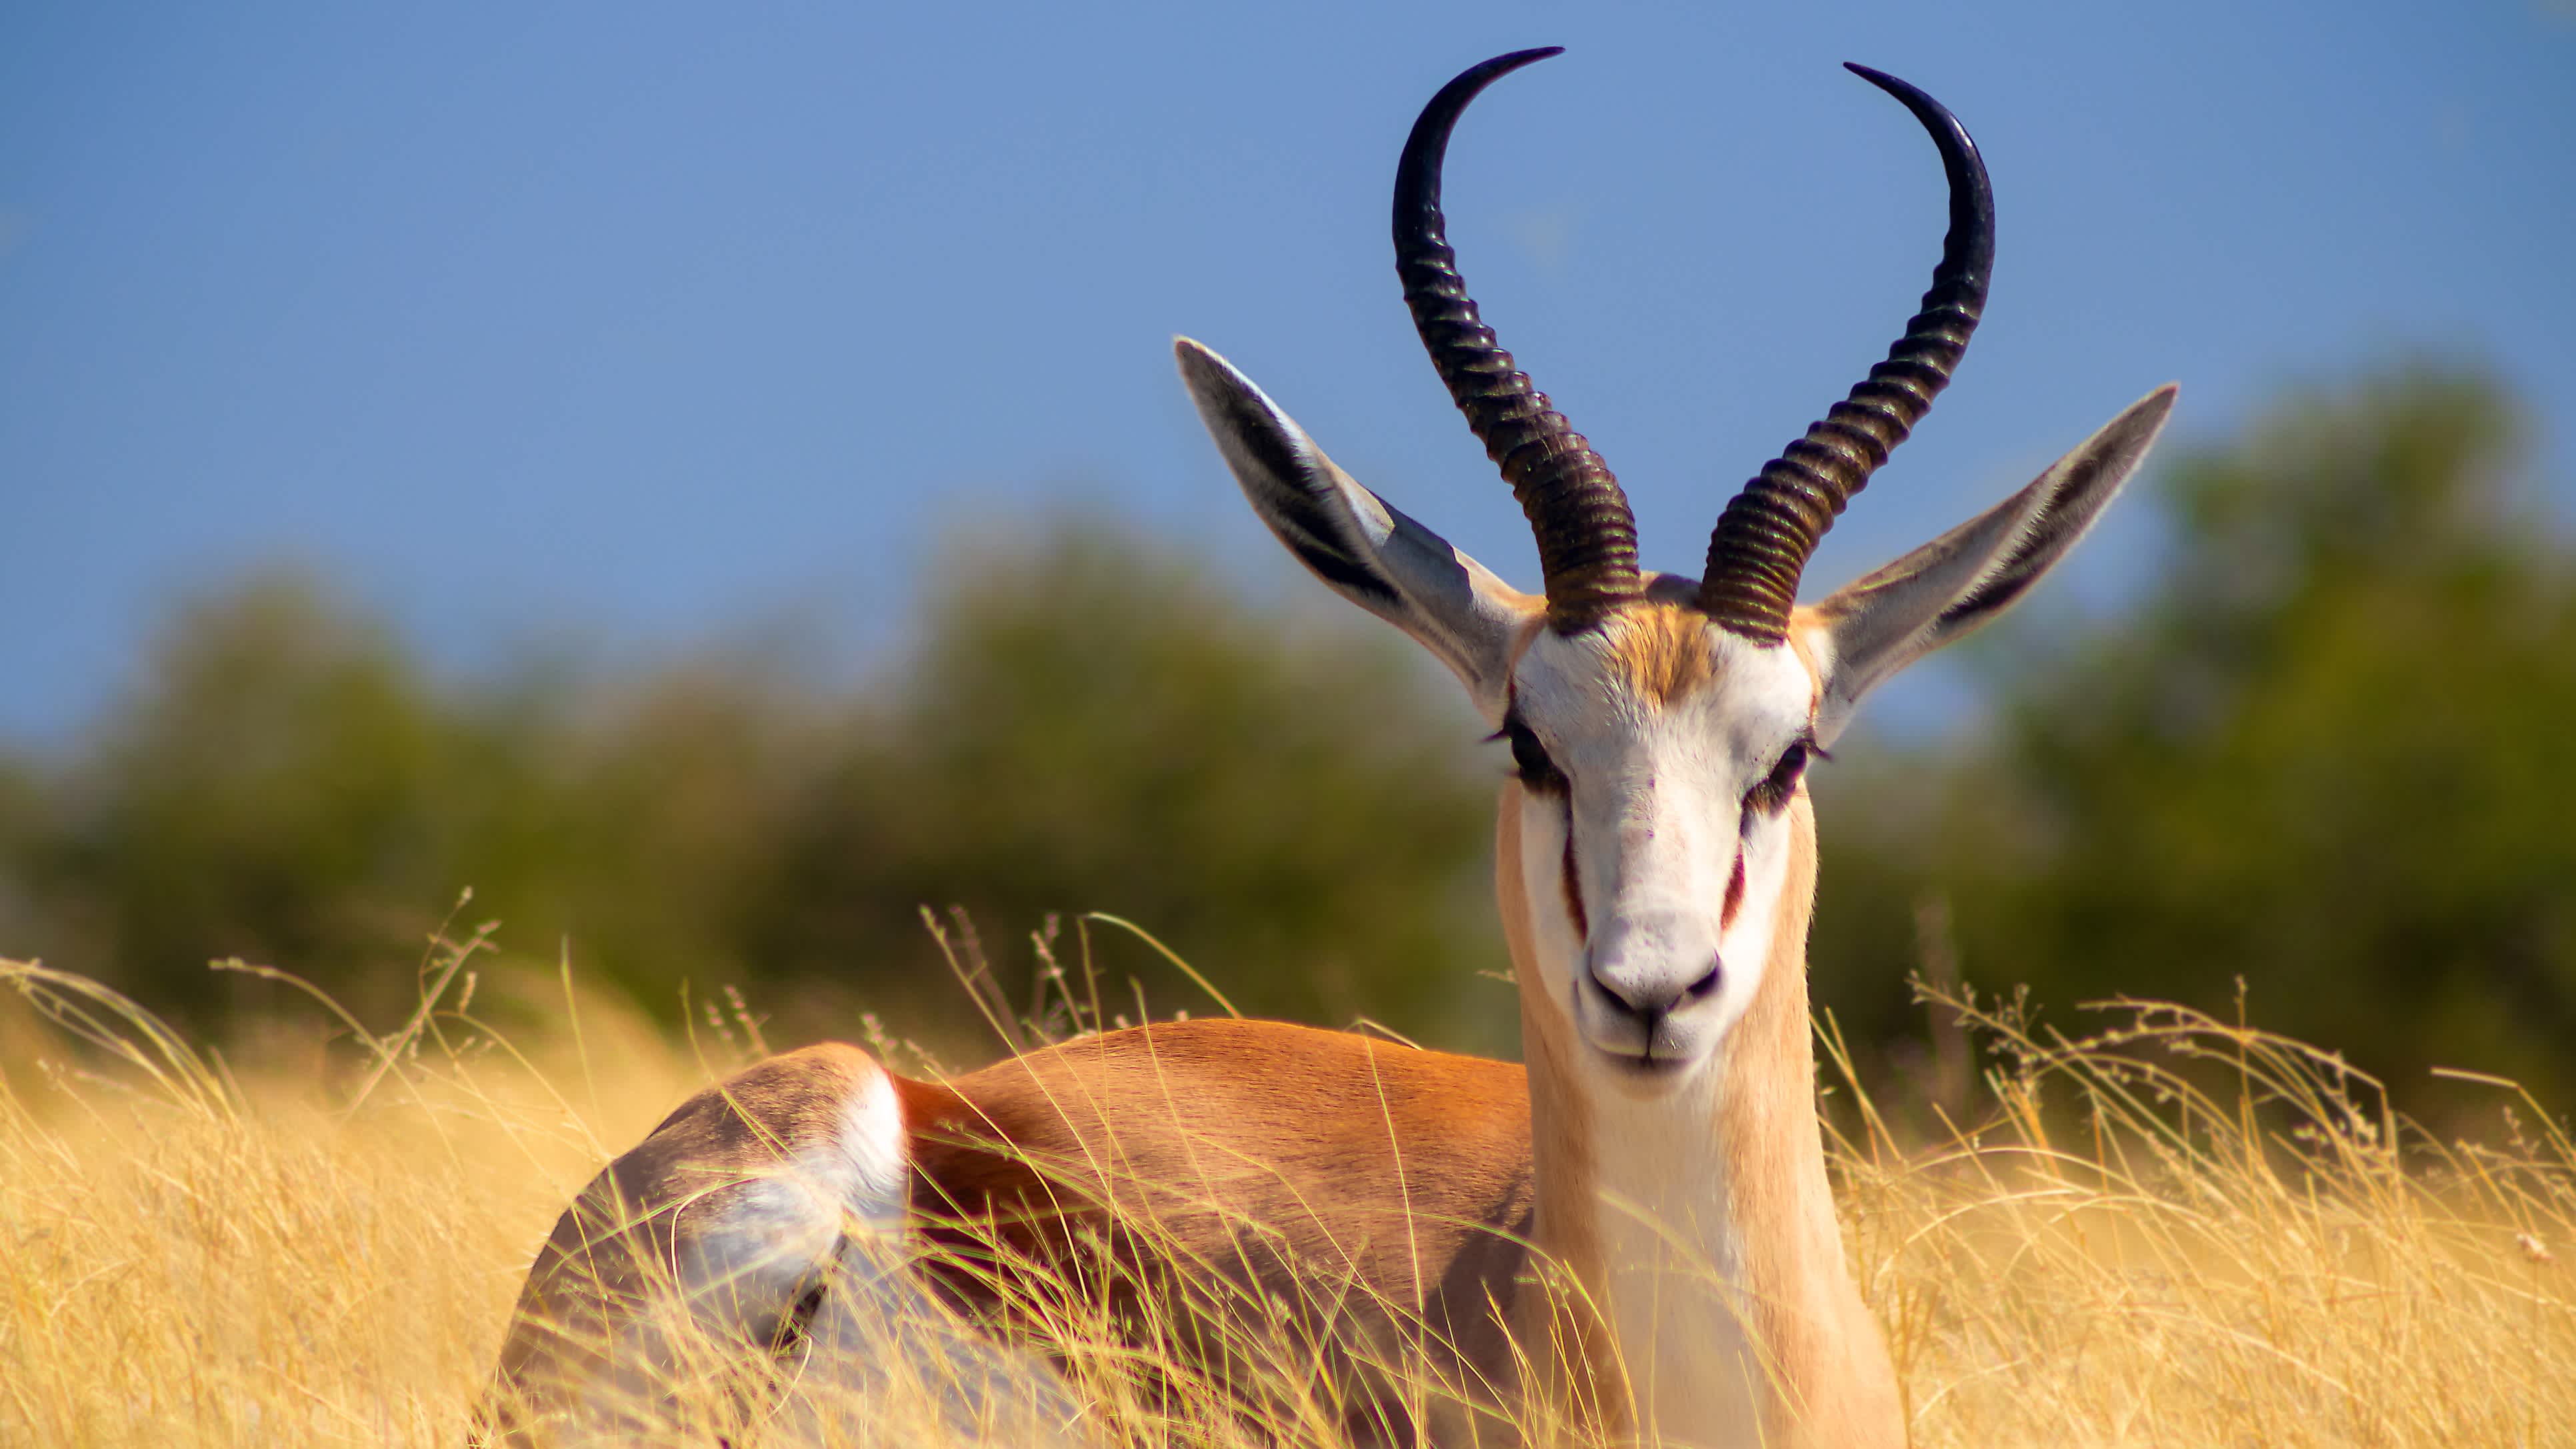 Le springbok (antilope de taille moyenne) dans les hautes herbes jaunes. Parc national d'Etosha. Namibie